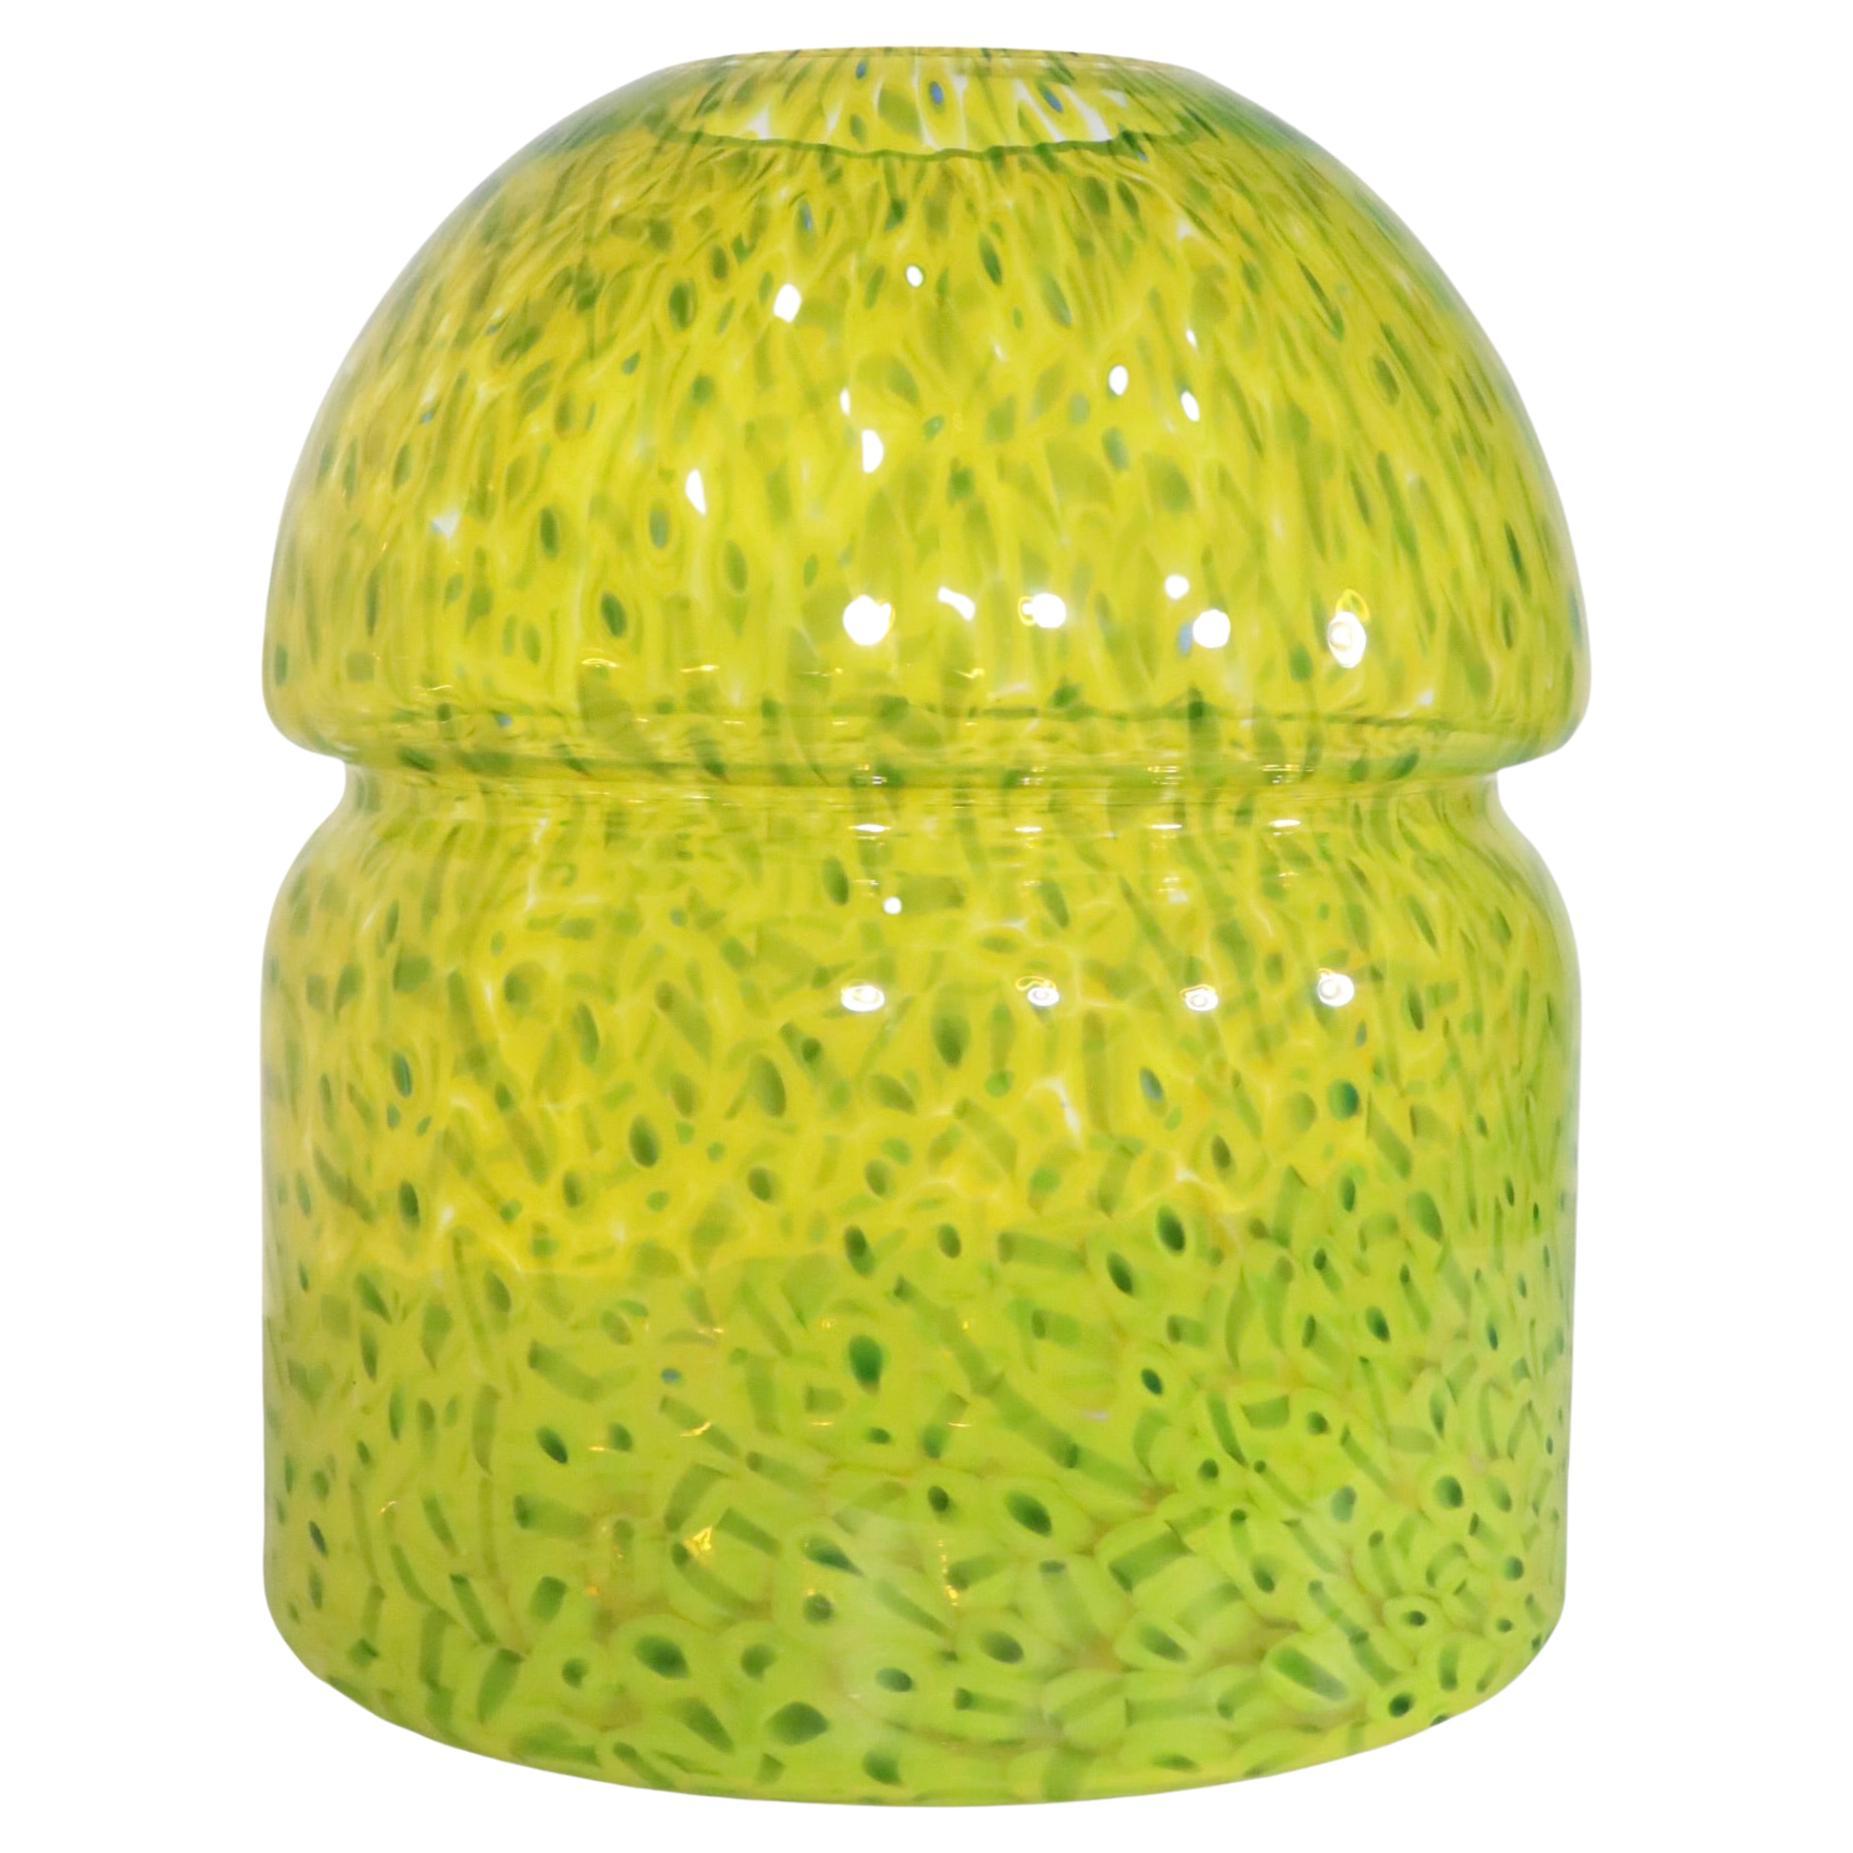 Spectaculaire Glicine de Murano  vase conçu par Gae Aulenti pour Vistosi, vers les années 1980. 
 Le vase a été exécuté dans des tons verts polychromes, la base est ronde, avec un sommet en forme de dôme.
 Cet exemplaire est en excellent état,